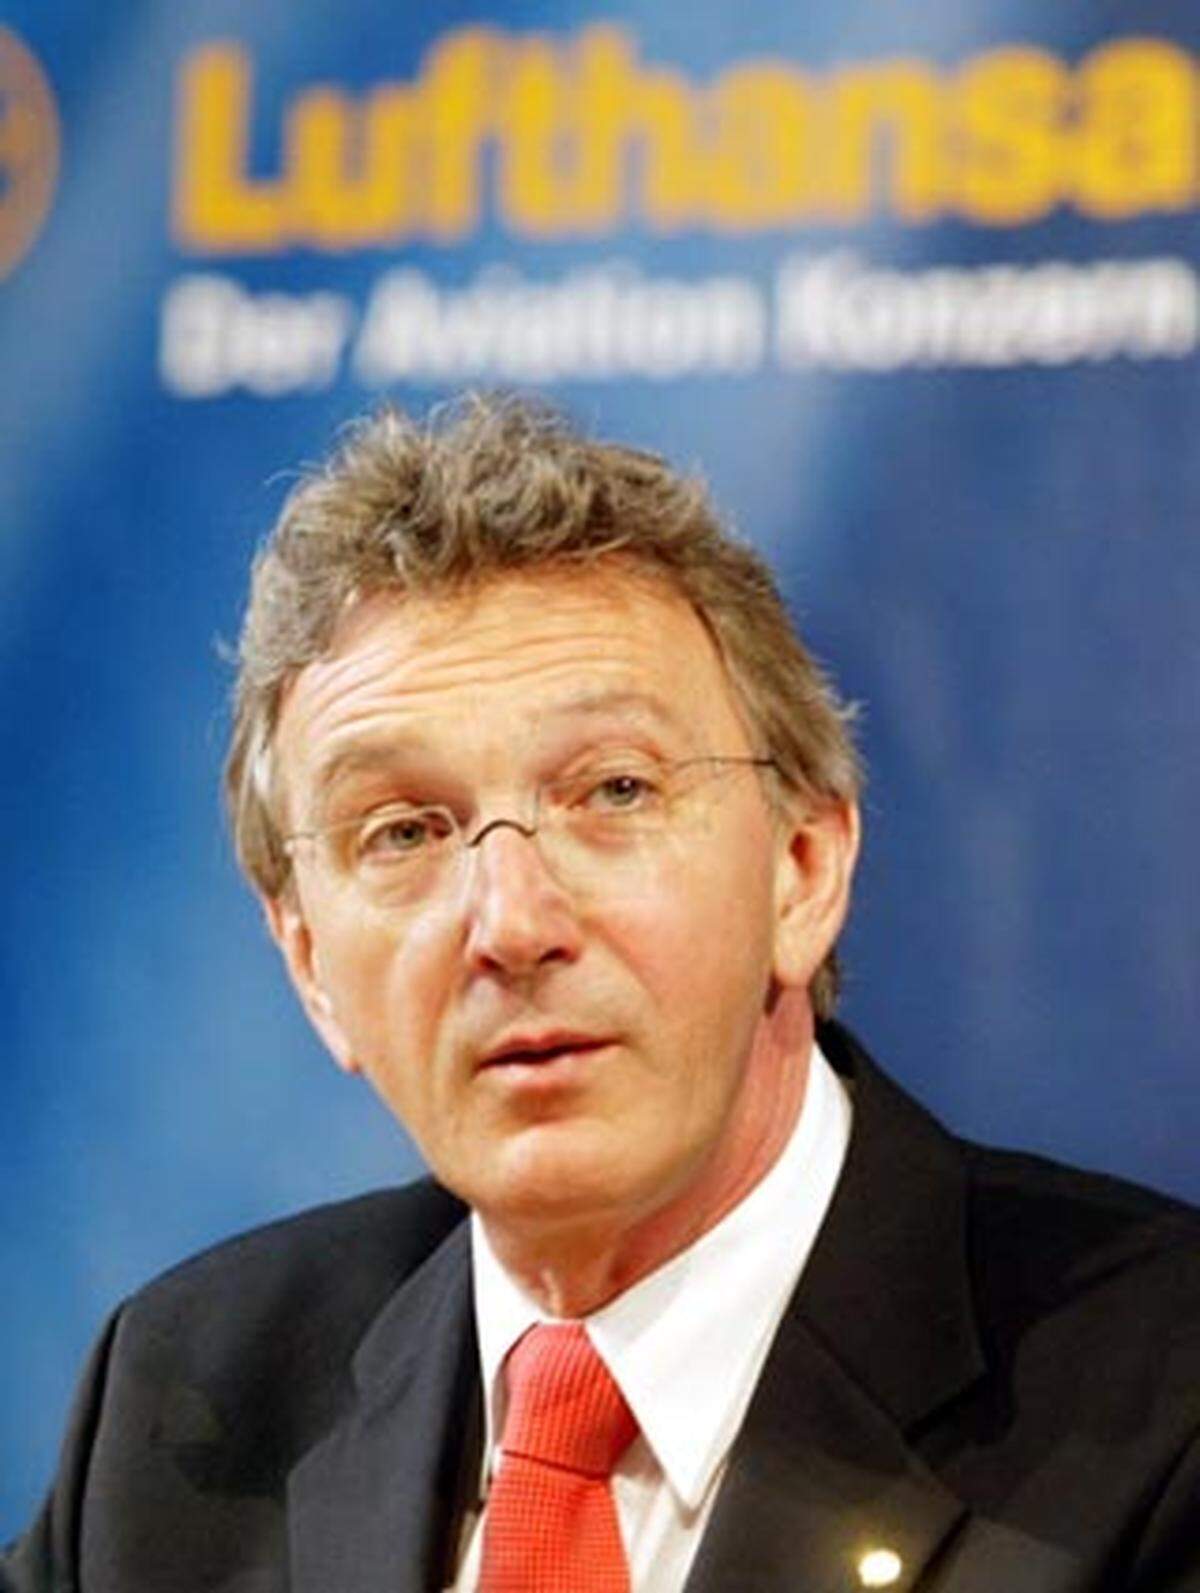 An der Spitze des Konzerns steht seit 2003 Wolfgang Mayrhuber. Der Oberösterreicher, der vor mehr als 35 Jahren als Triebwerksingenieur bei der Lufthansa begann, hat sich nach dem 11. September als ausgezeichneter Krisenmanager einen Namen gemacht.